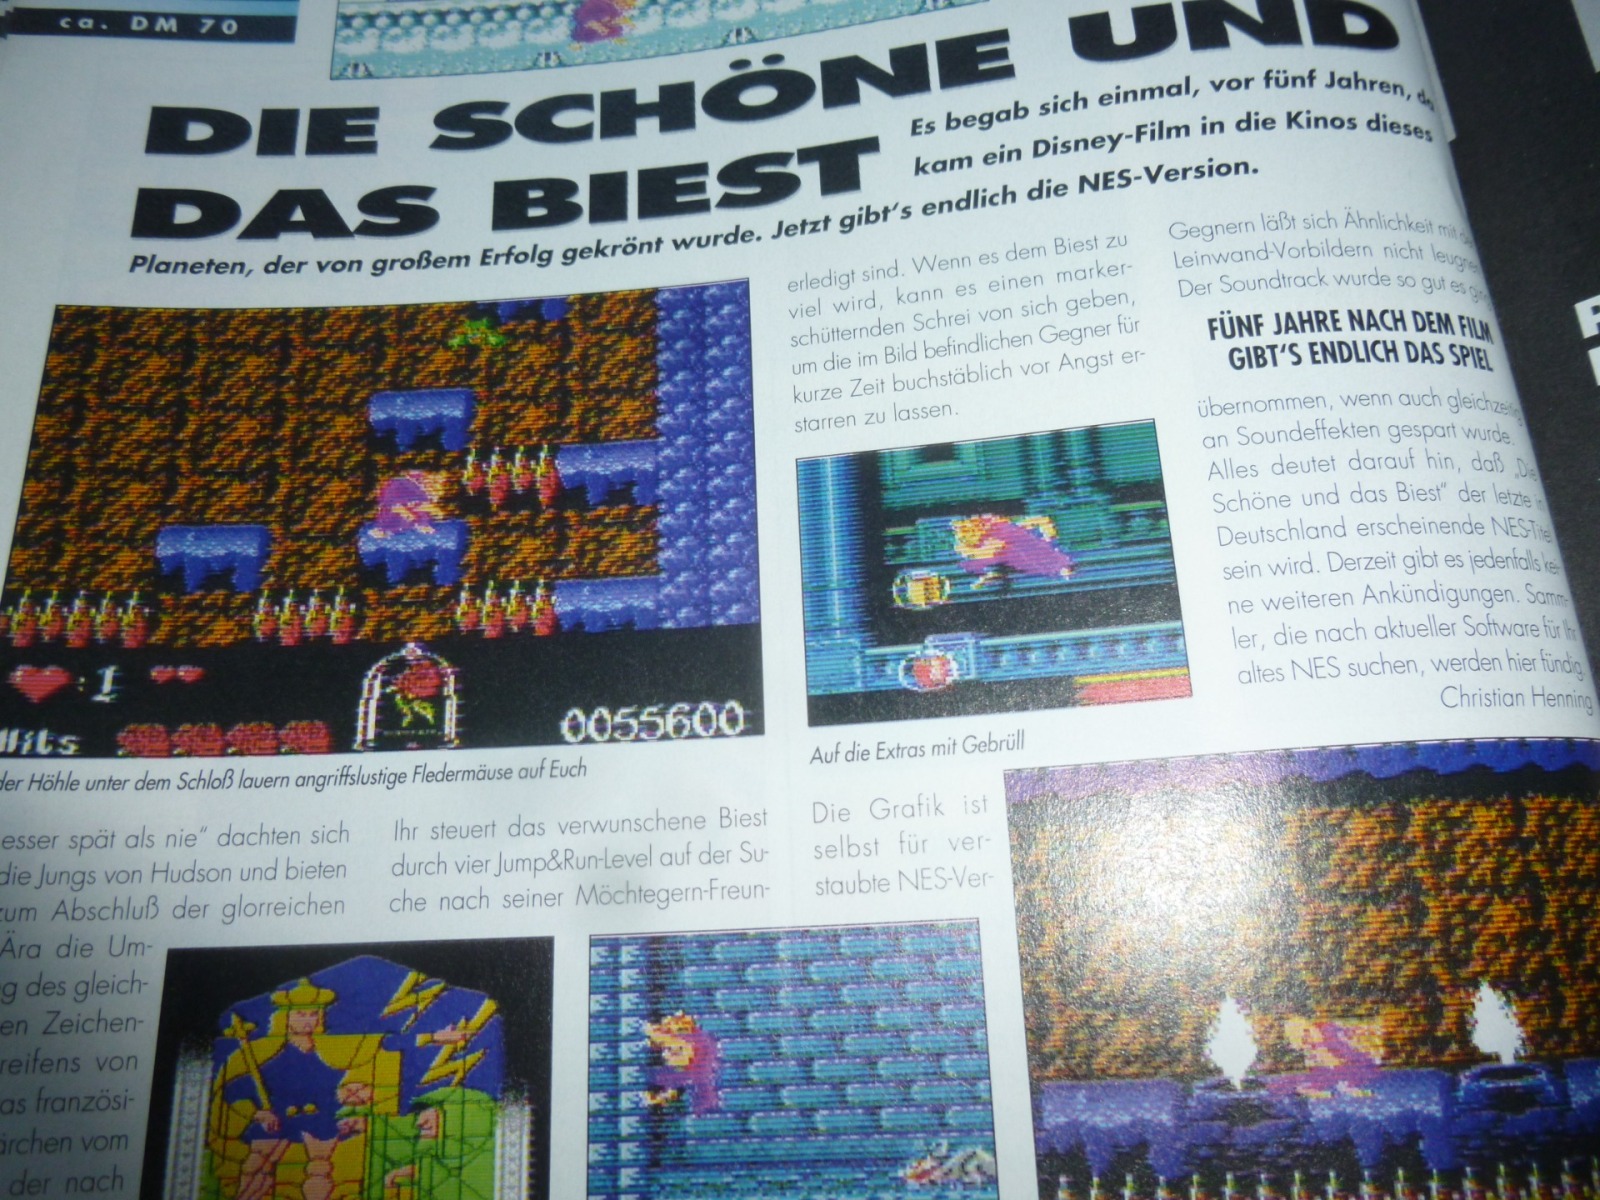 TOTAL Das unabhängige Magazin - 100% Nintendo - Ausgabe 4/96 1996 18